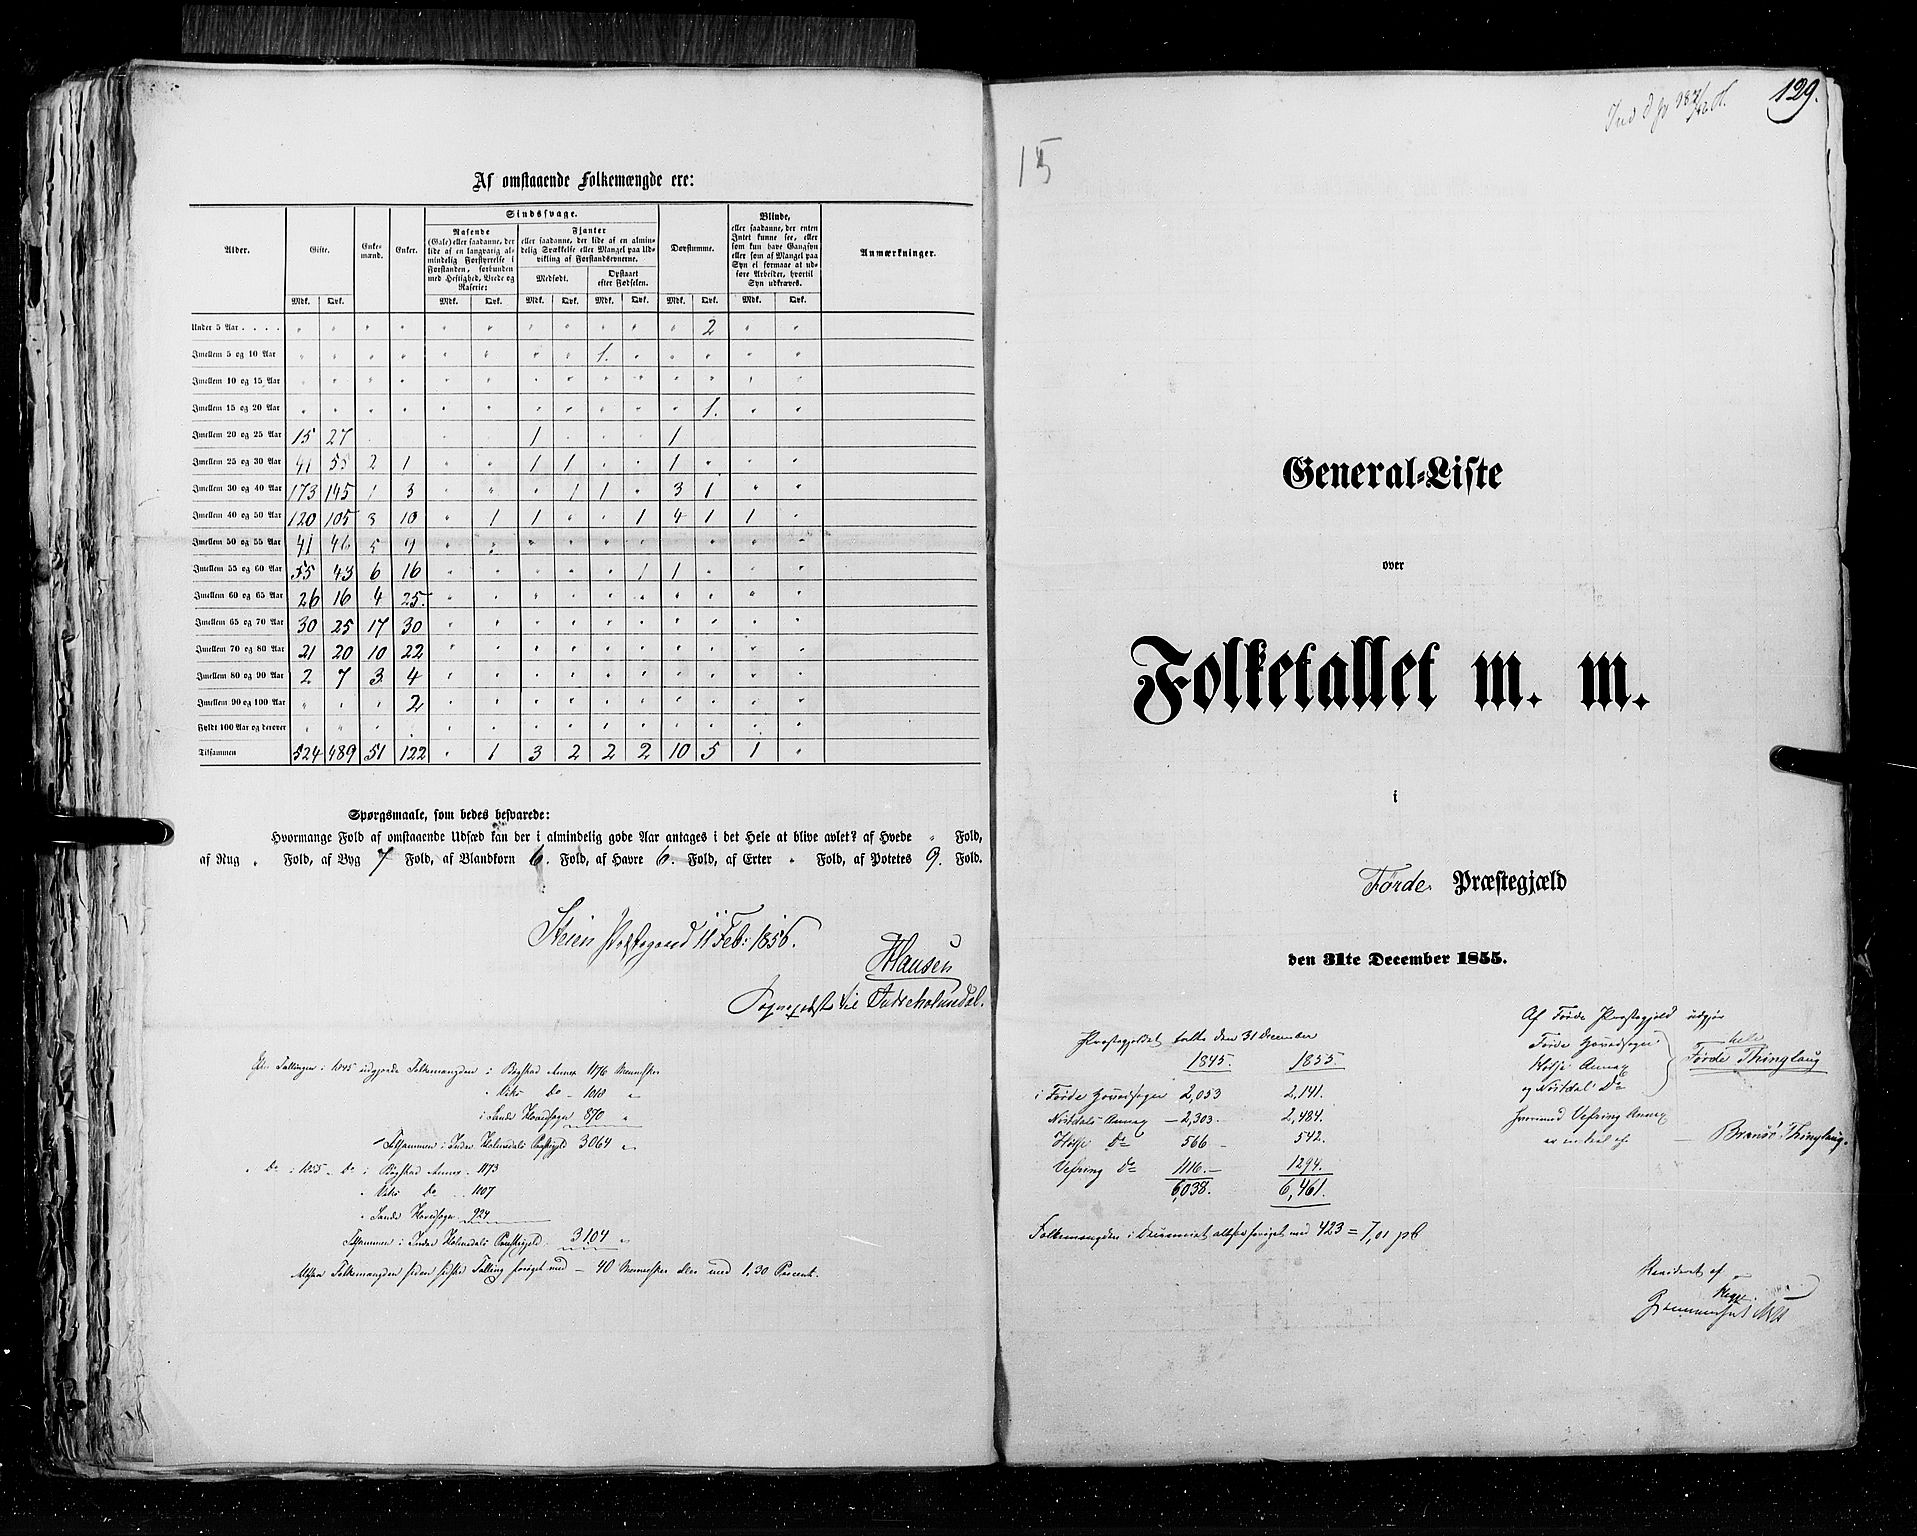 RA, Census 1855, vol. 5: Nordre Bergenhus amt, Romsdal amt og Søndre Trondhjem amt, 1855, p. 129